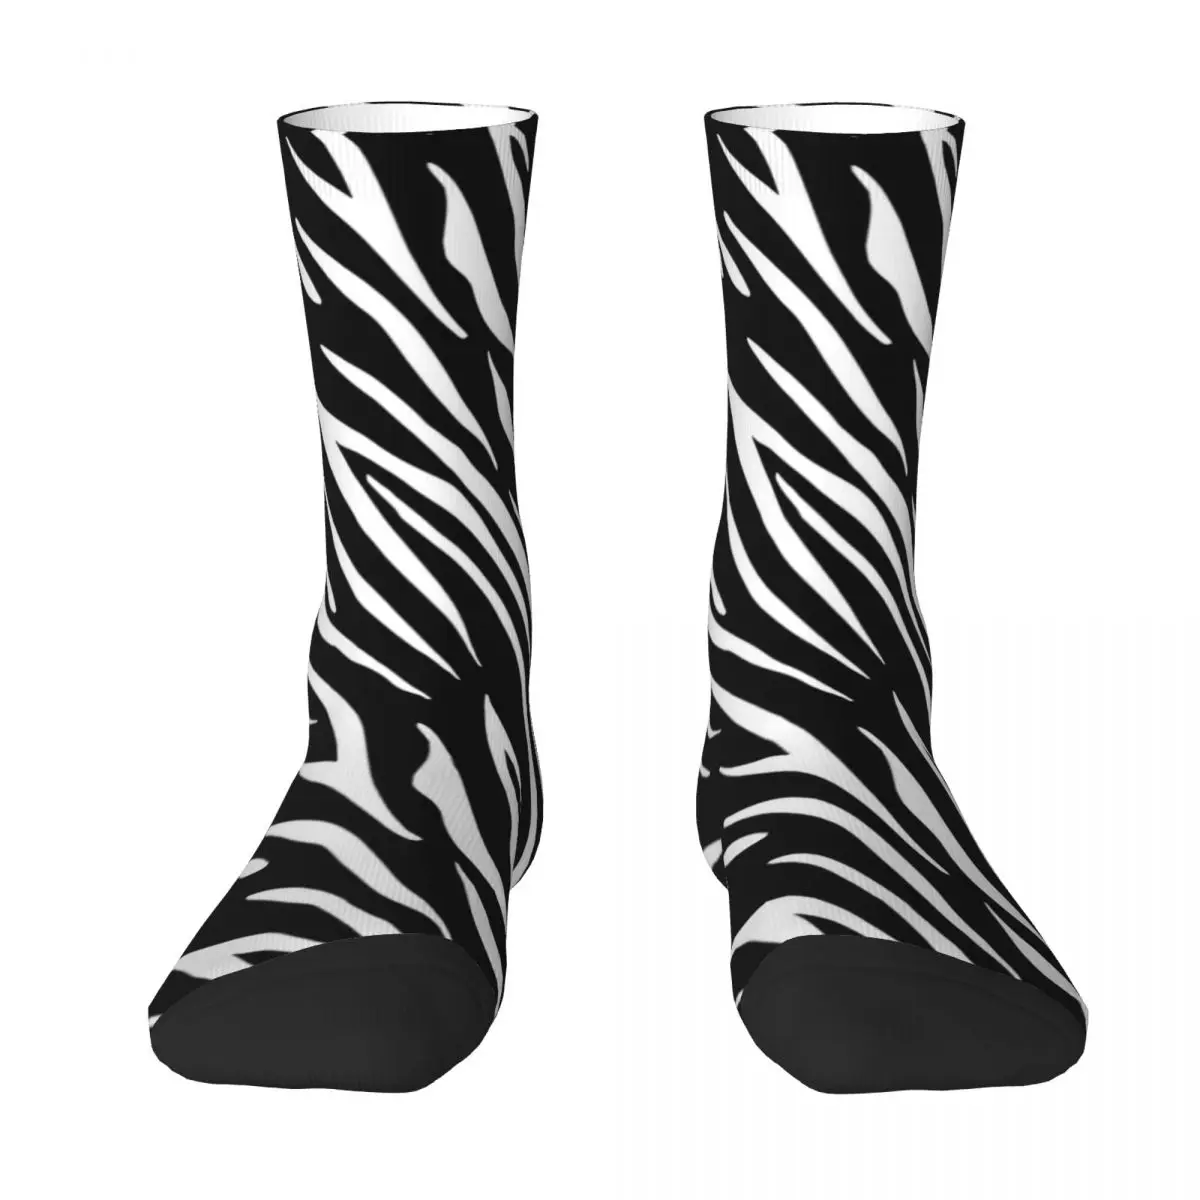 Носки в черно-белую полоску с принтом тигра, школьные современные средние чулки, большие носки унисекс из химического волокна в стиле ретро